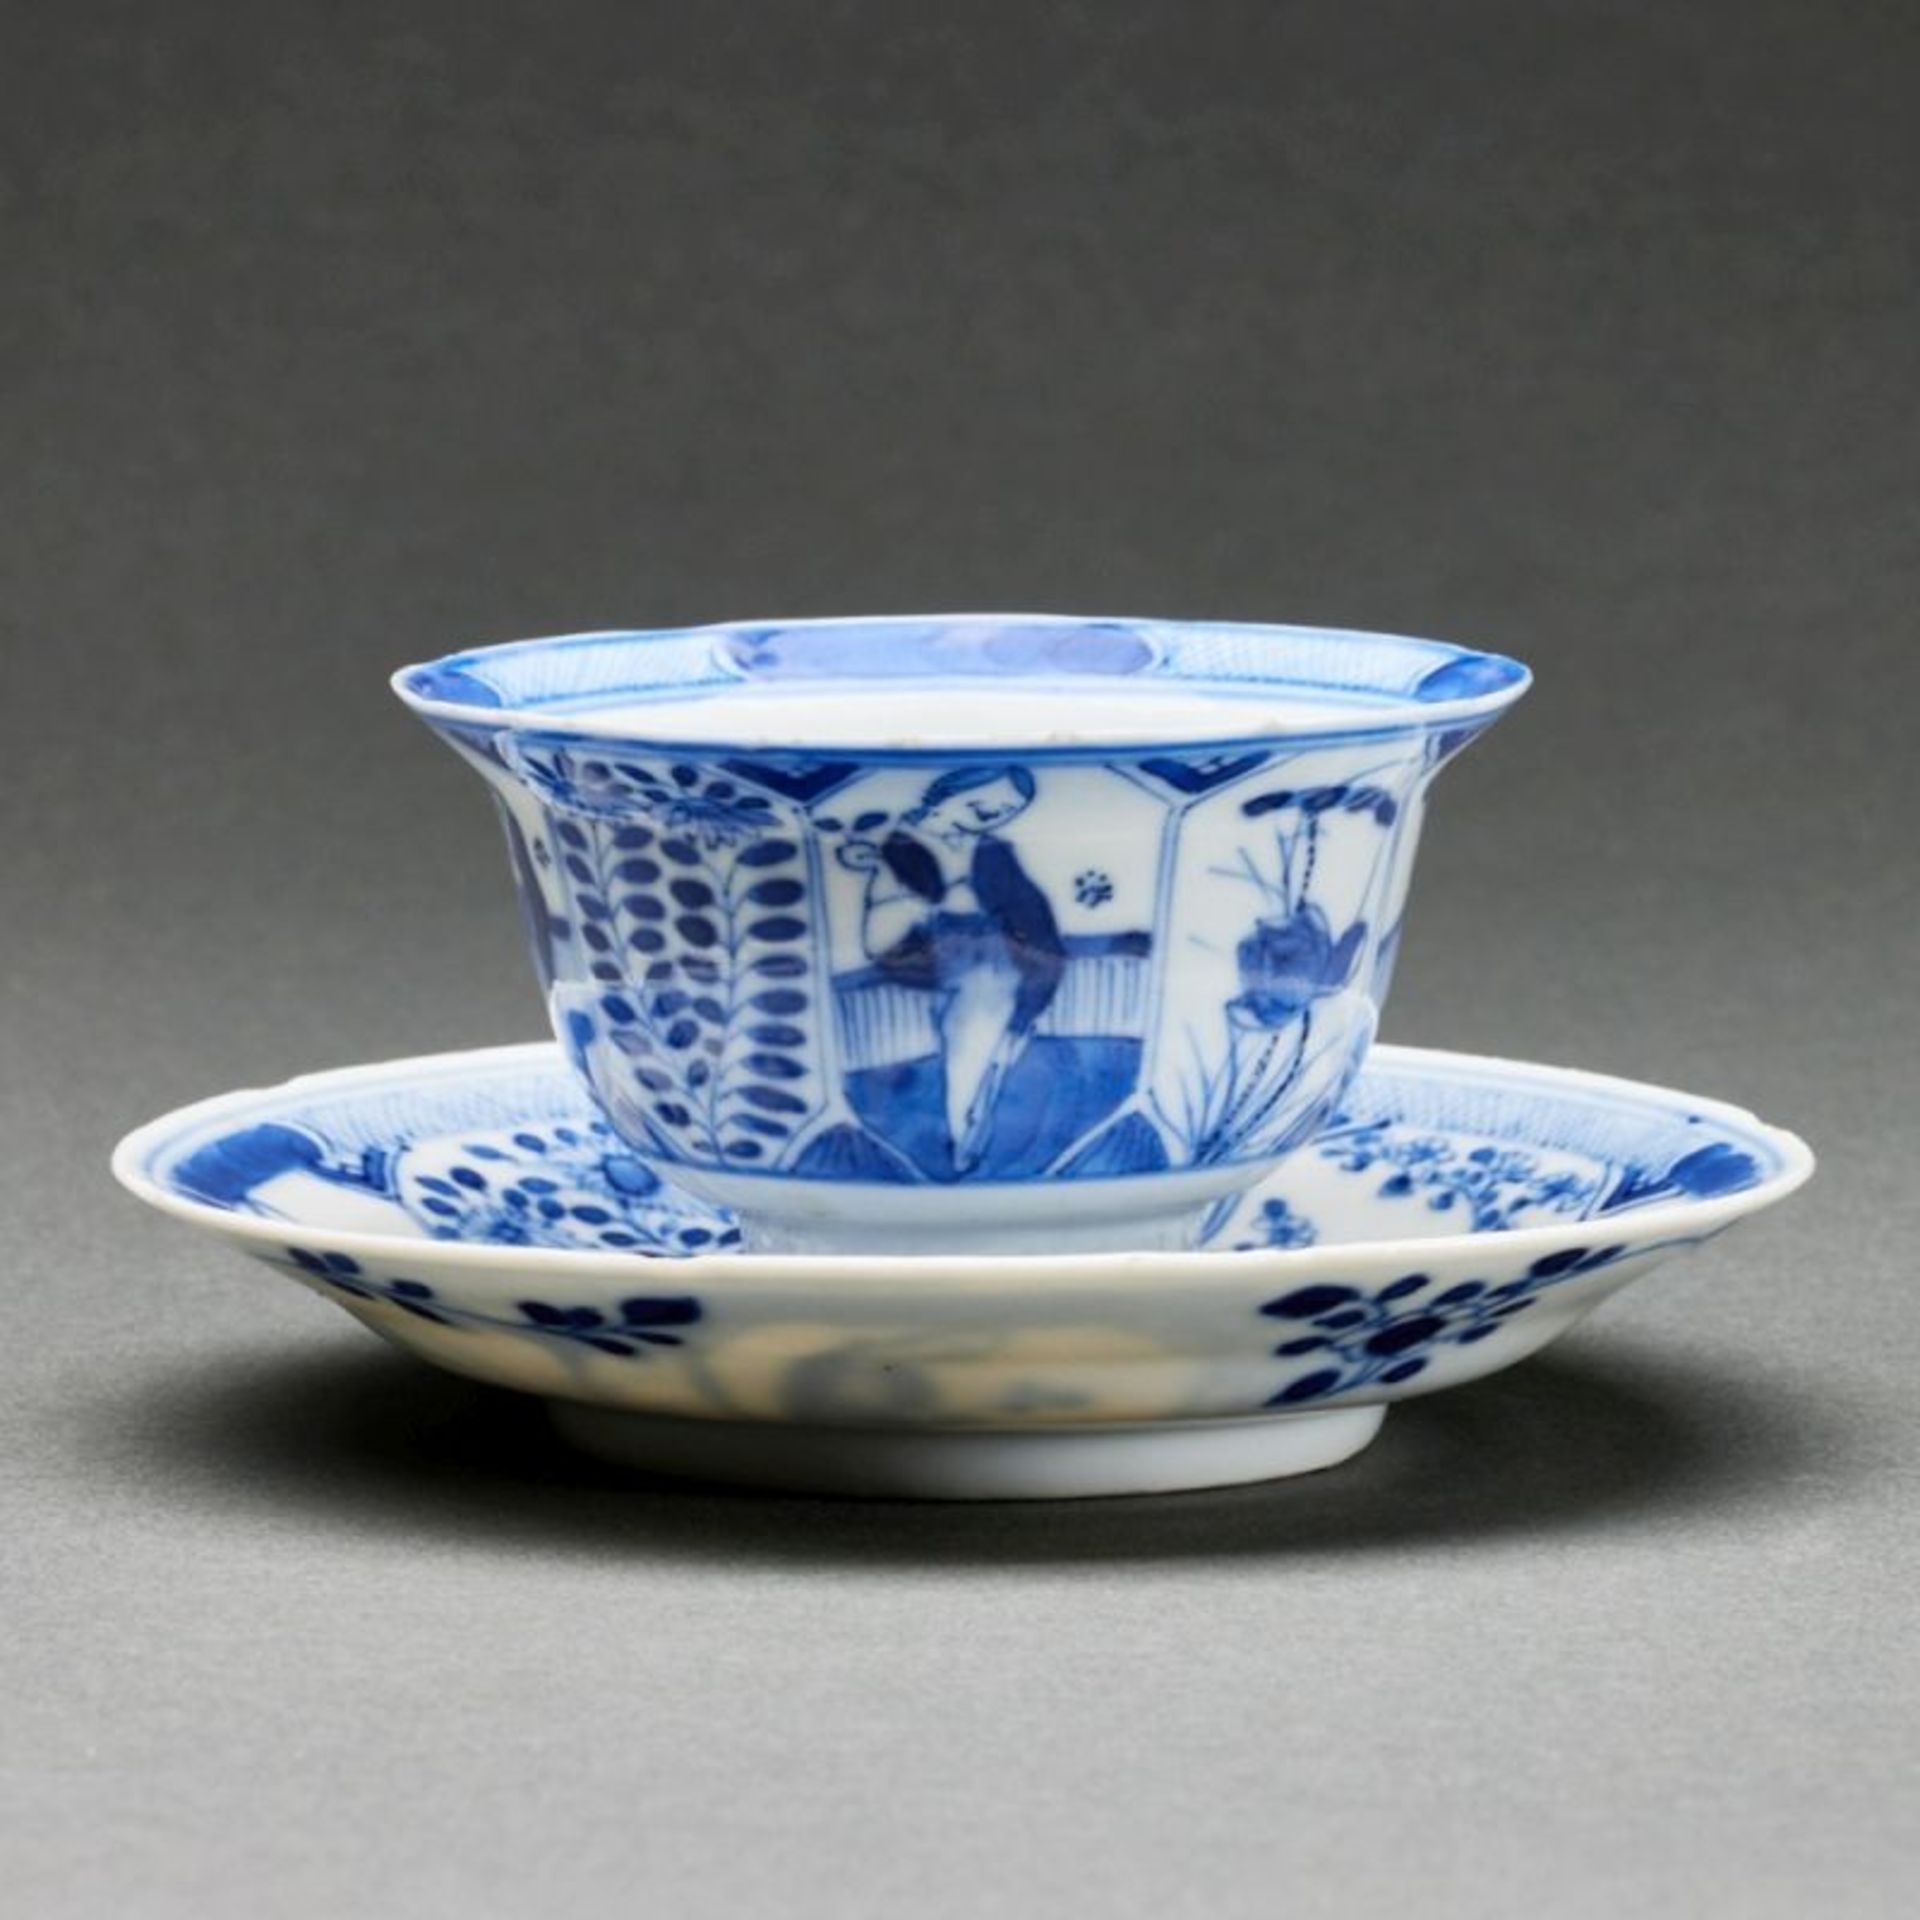 Teeschale und Untertasse, China, Qing-Dynastie, 18. Jahrhundert